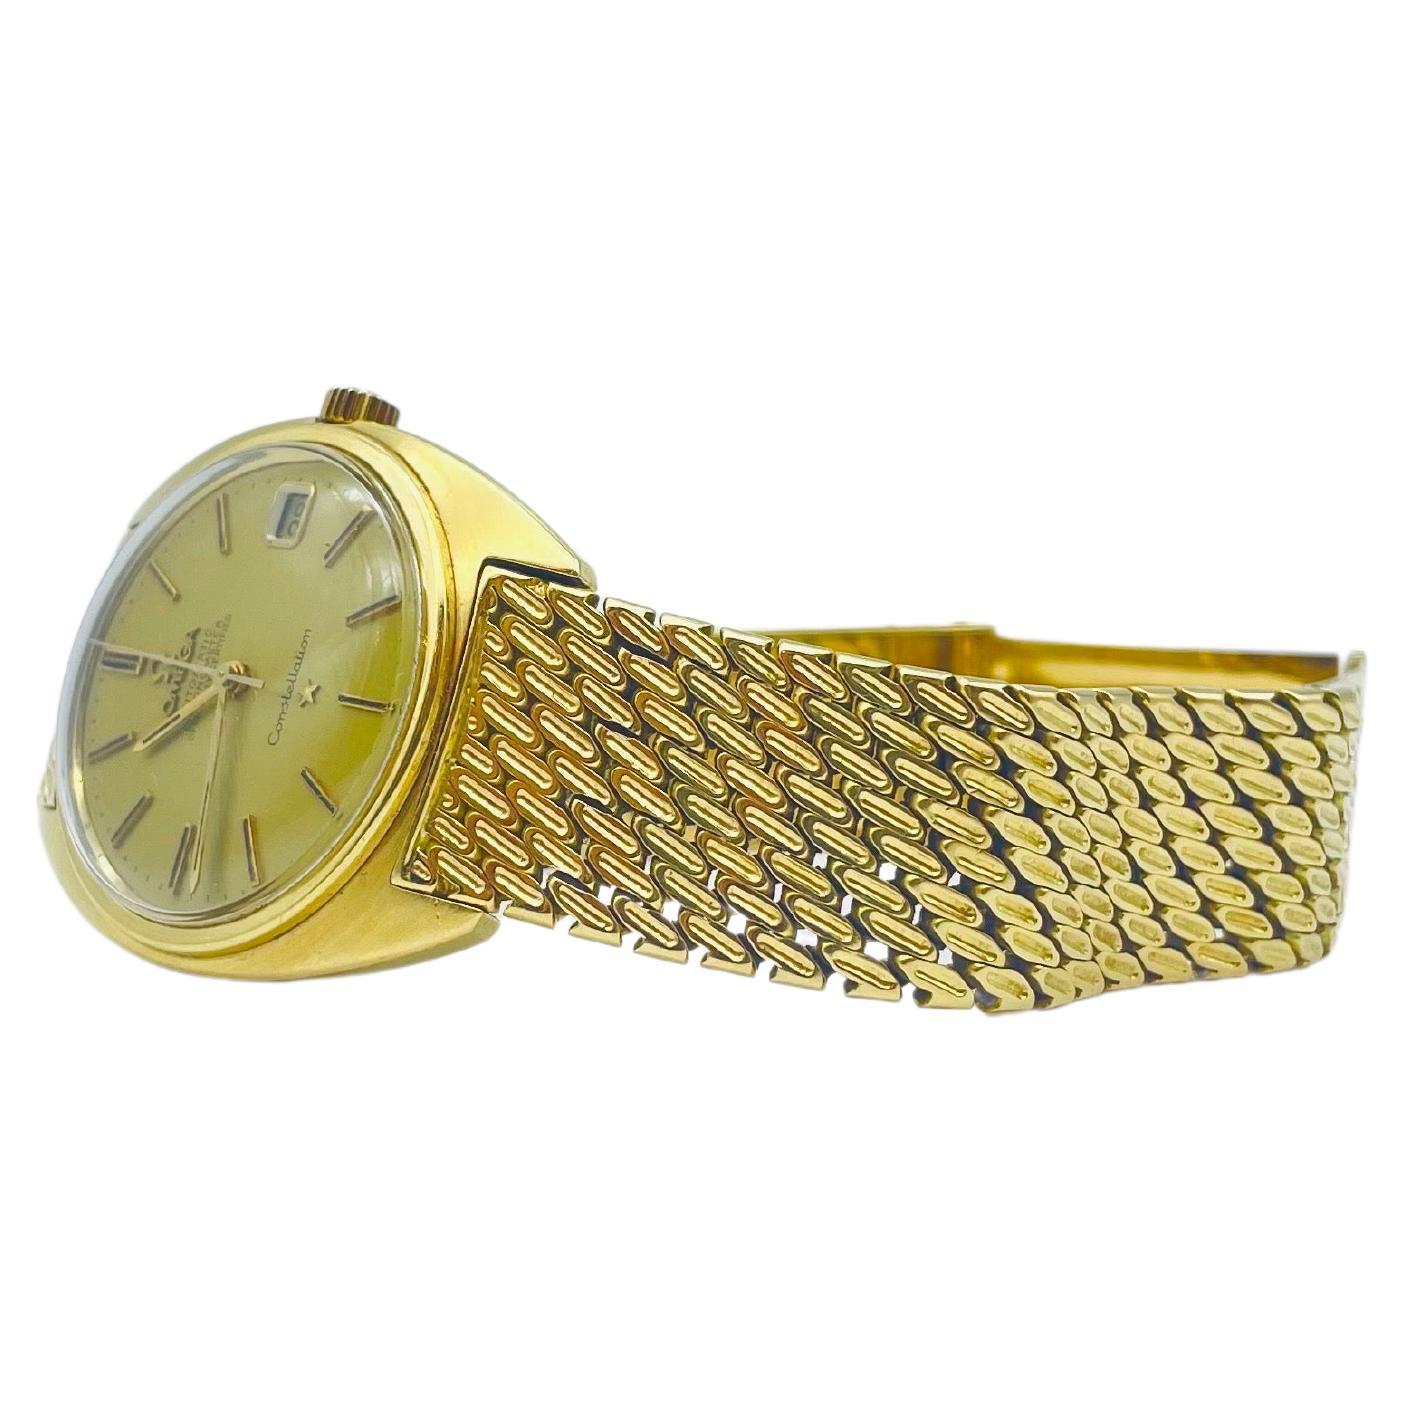 Cette montre est enfermée dans un boîtier en or jaune de 35 mm, encadré par une lunette en or jaune qui accentue son allure opulente. Le cadran en or sans chiffres ajoute une touche de sophistication classique, et le bracelet en or jaune, orné d'un